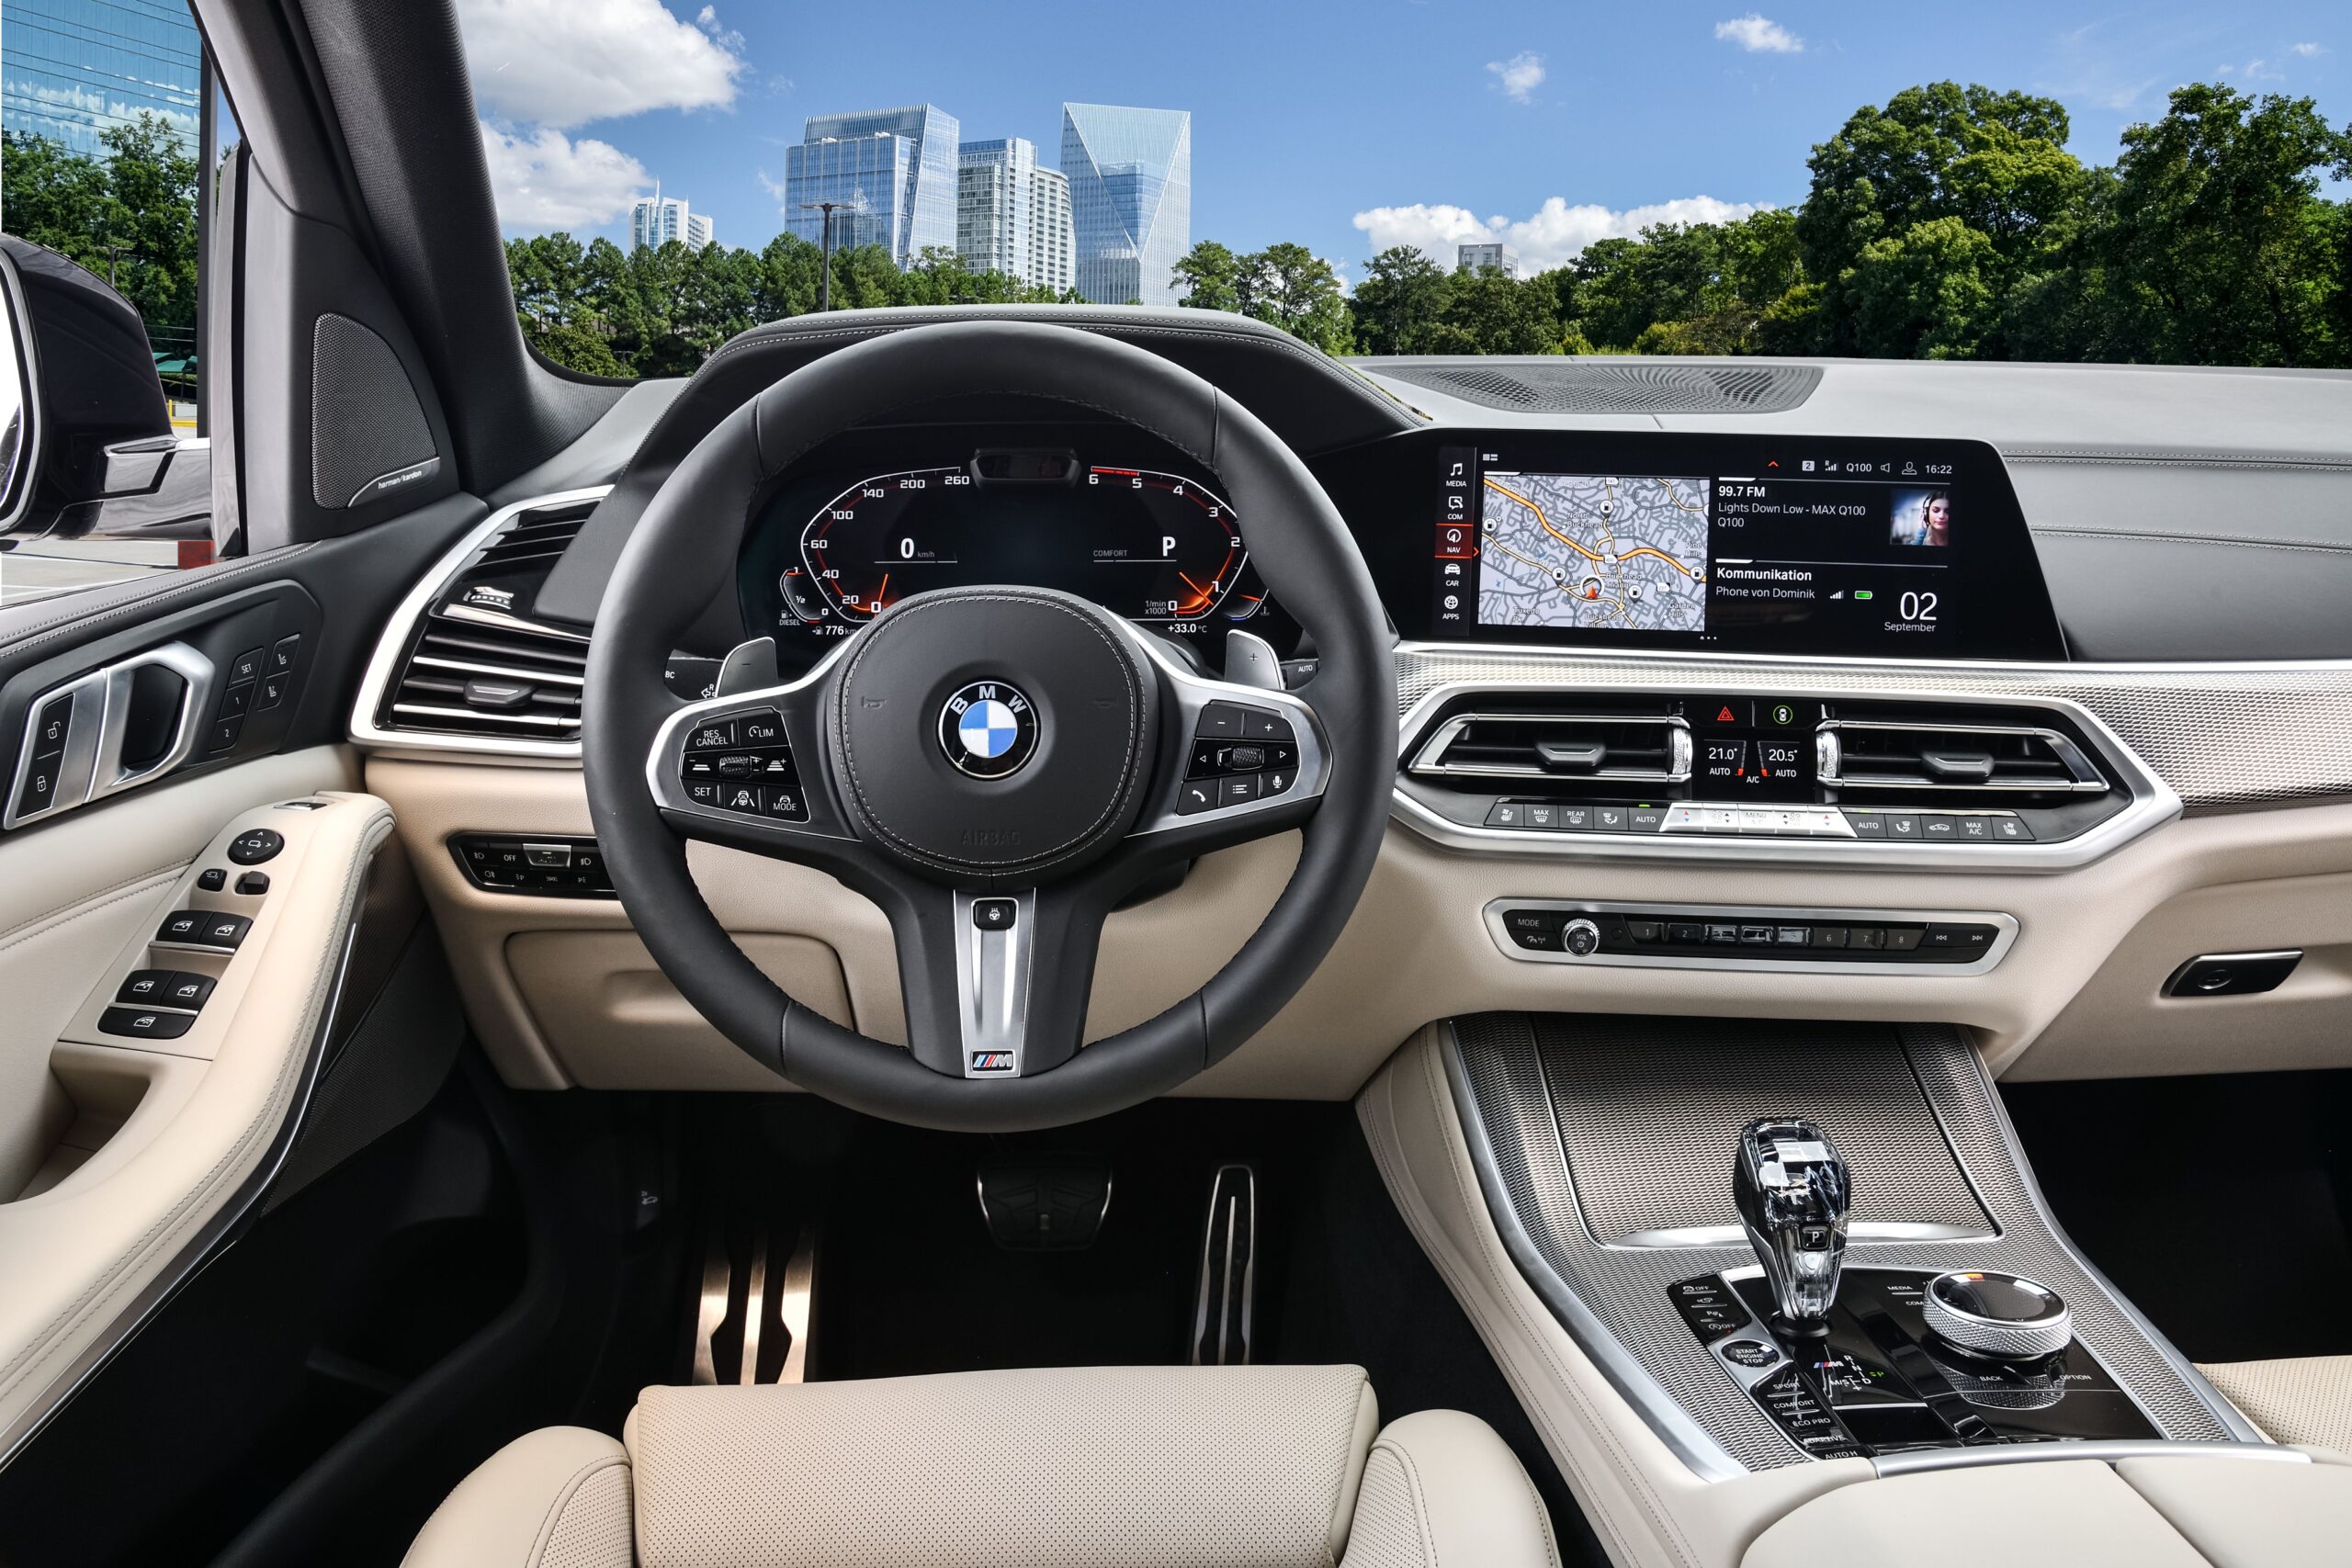 Tải ngay hình ảnh chi của nội thất xe BMW X5 4